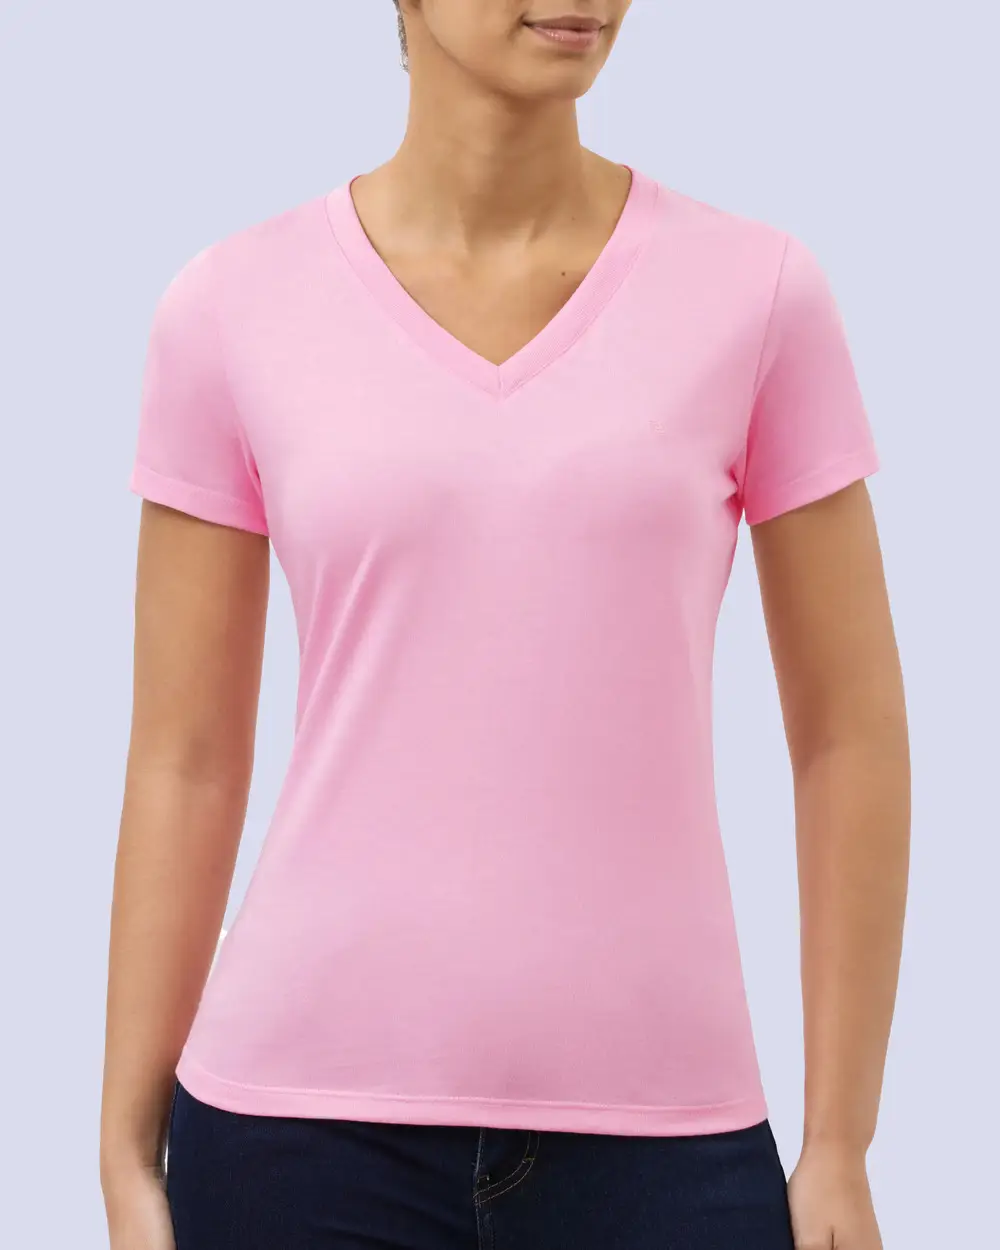 Camiseta dama cuello v color rosado